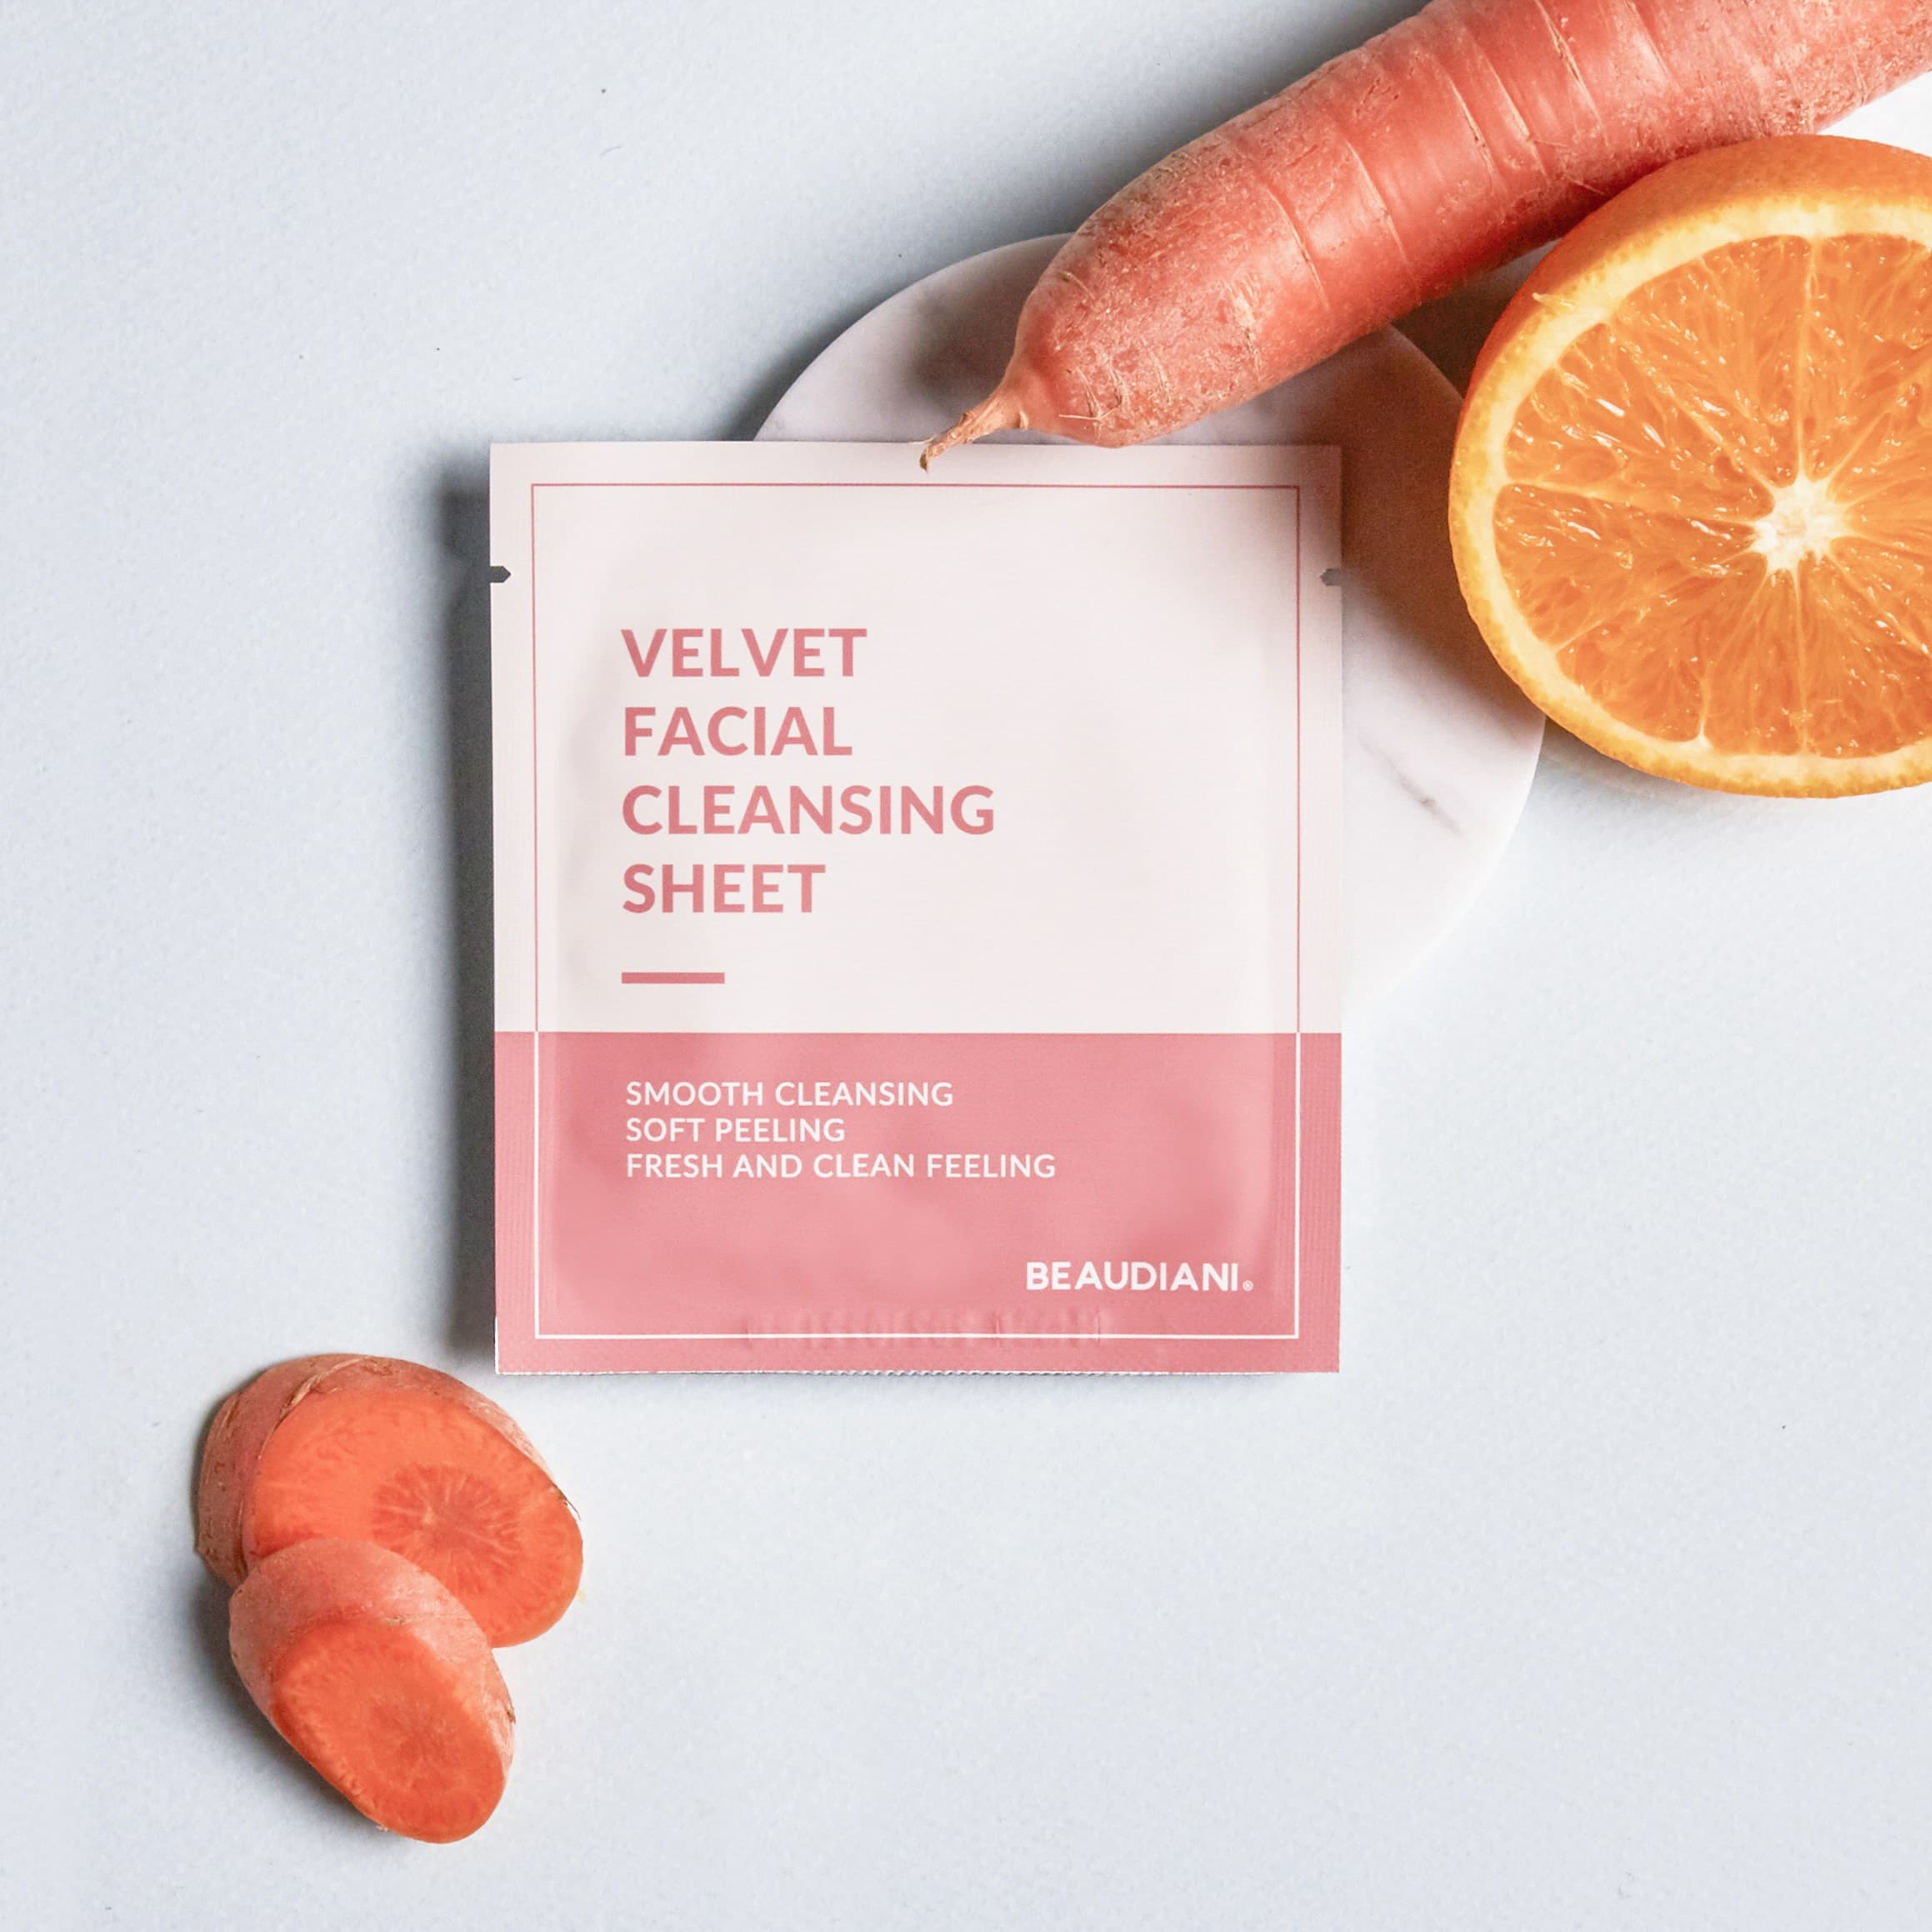 Velvet Facial Cleansing Sheet